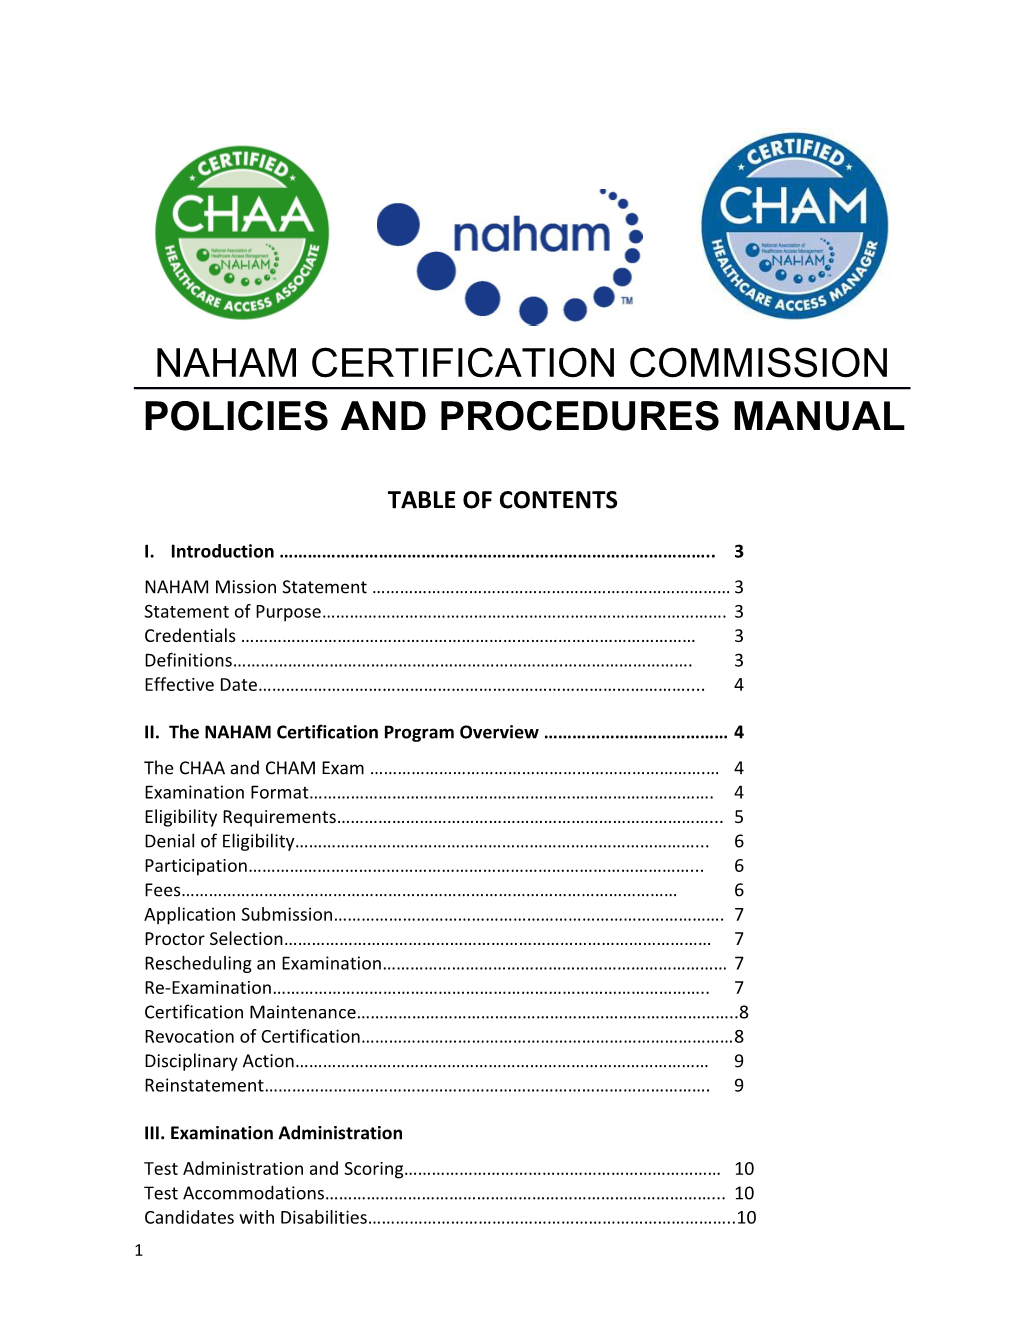 Naham Certification Program